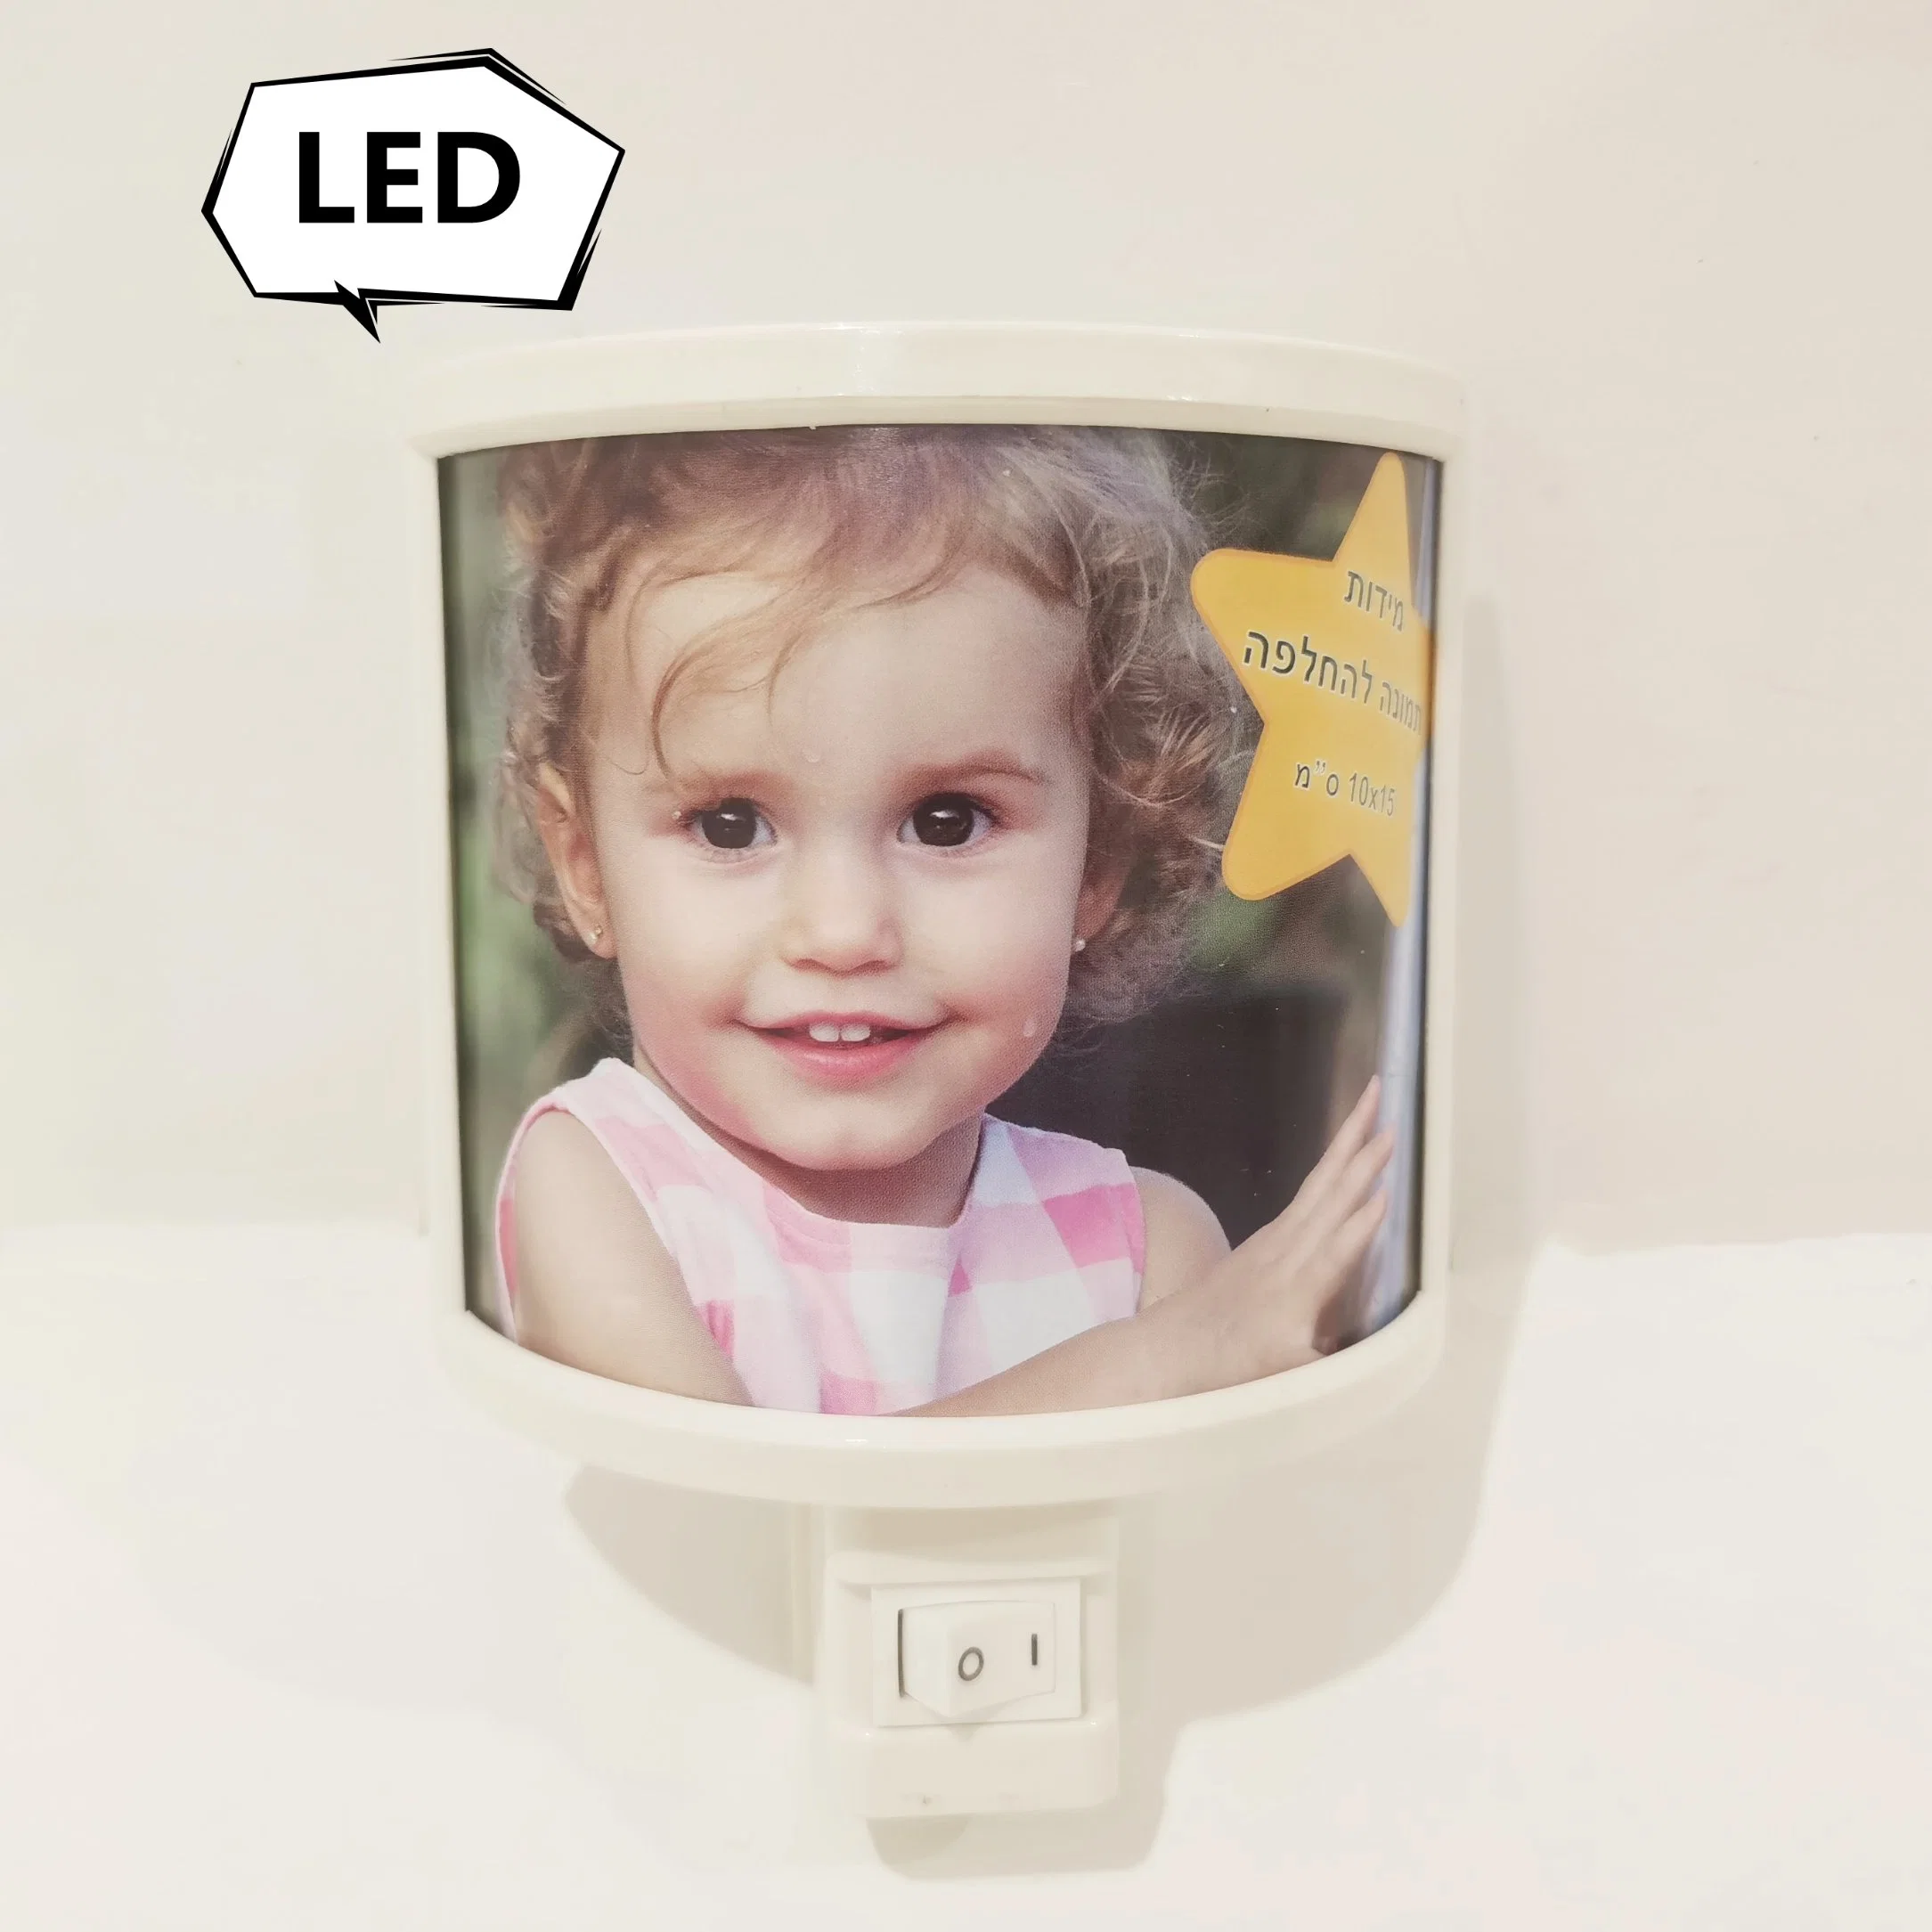 Las luces modernas, lámpara de mesa, Plug-in Kids Foto LED de luz, luz de noche